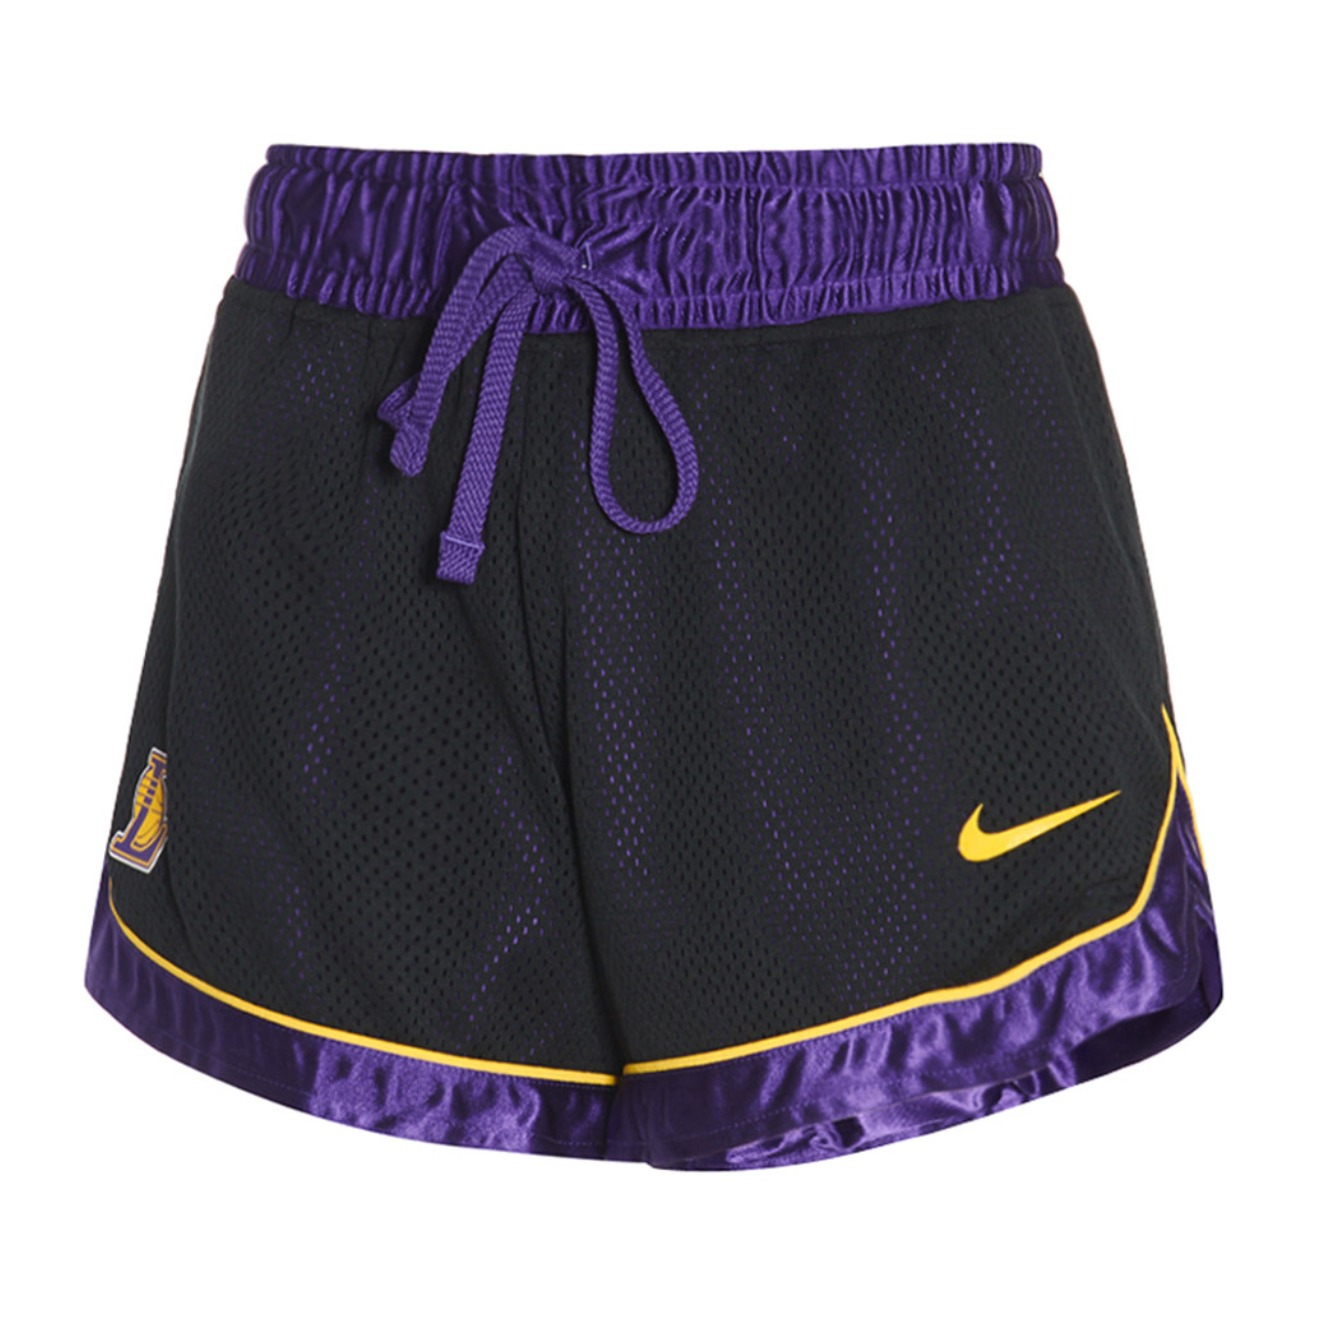 Nike 赛场系列 NBA湖人队女子篮球短裤 AV0211